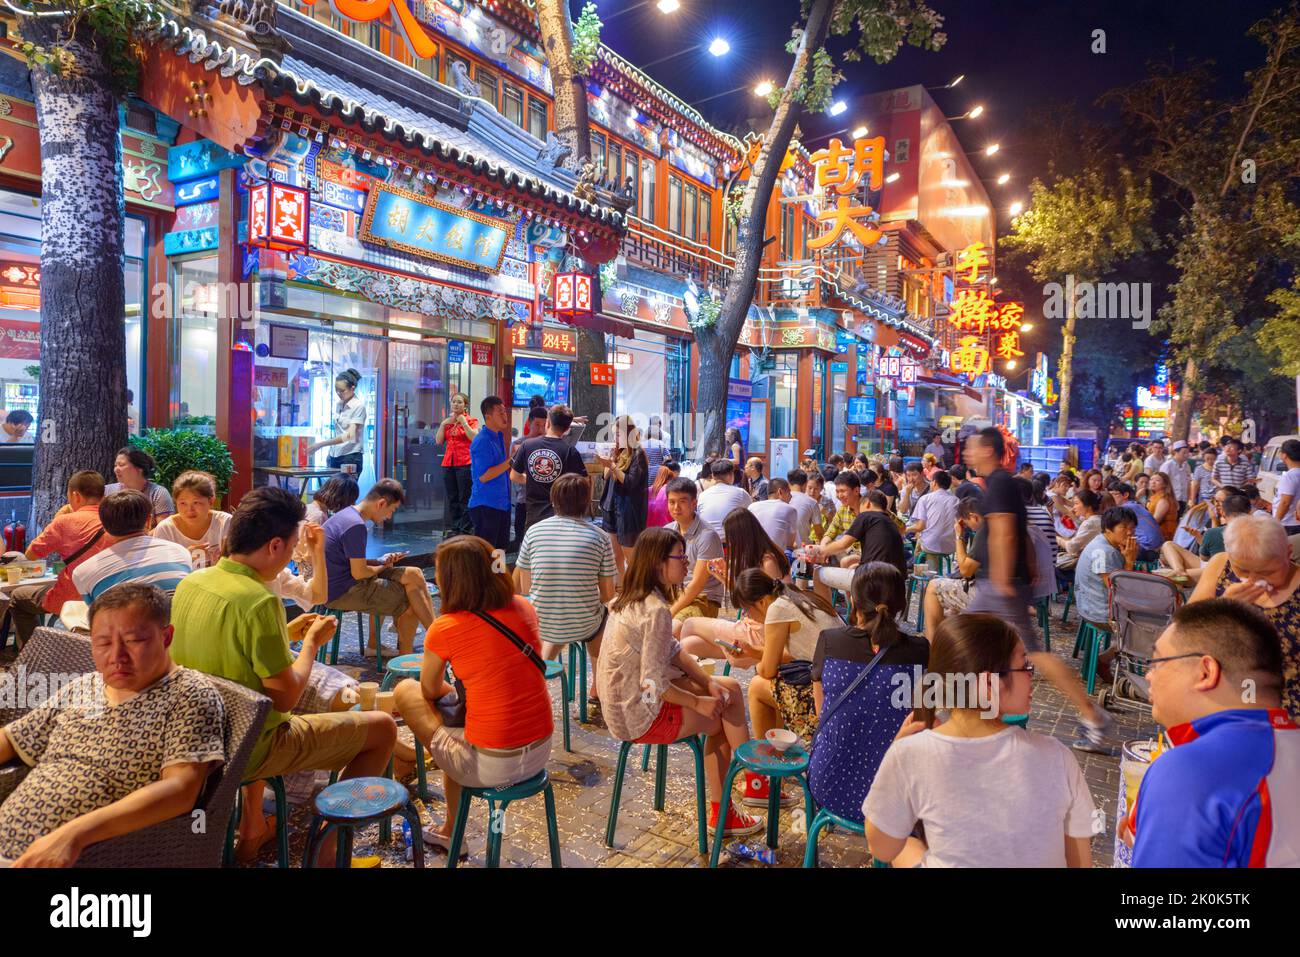 PEKING, CHINA - 28. JUNI 2014: Guijie Street, bekannt als "Ghost Street" mit Nachtleben Menschenmassen. Stockfoto